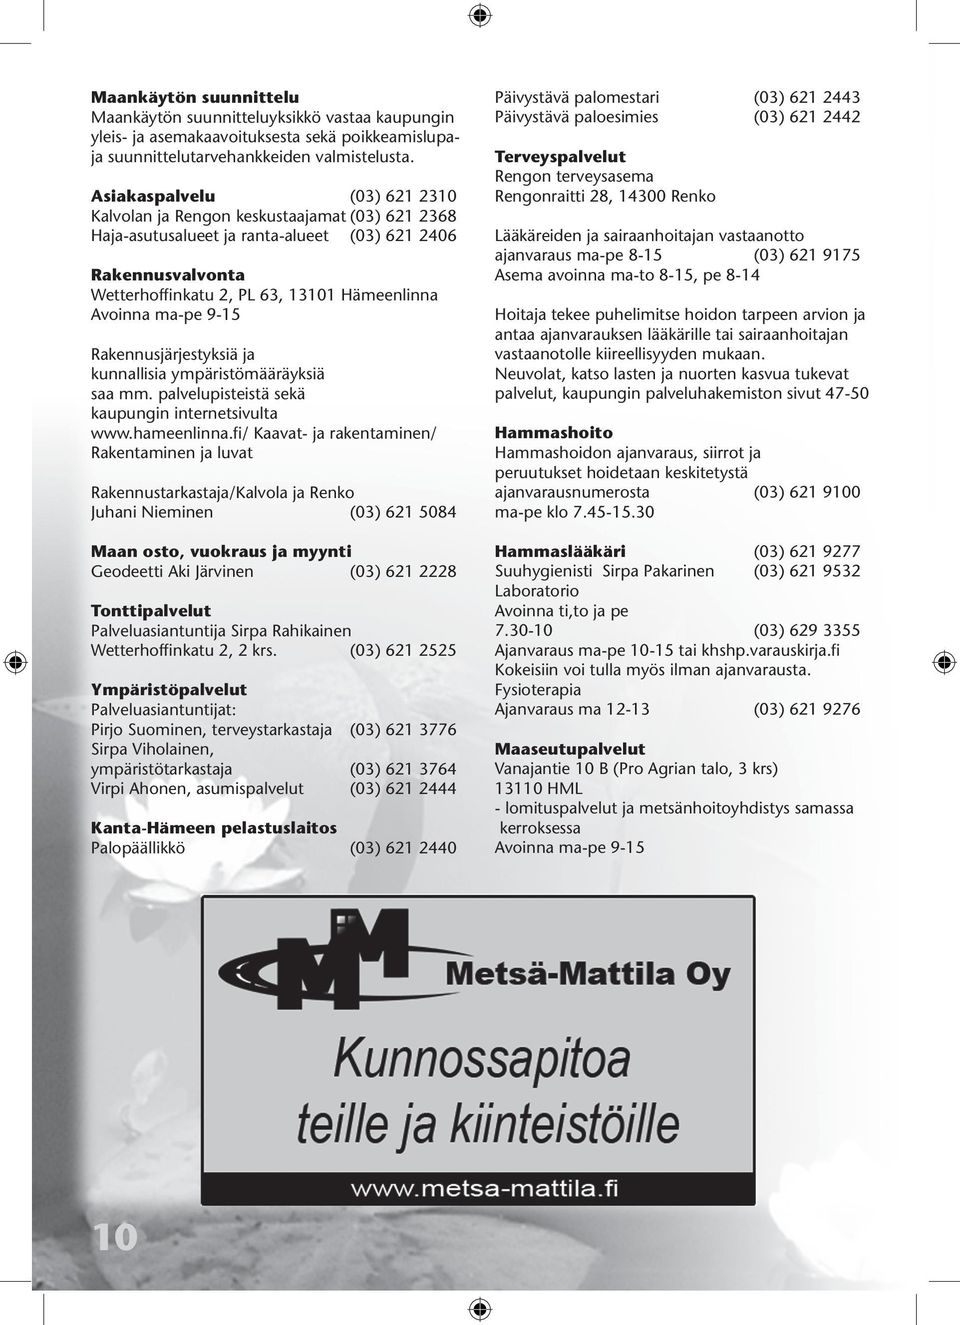 ma-pe 9-15 Rakennusjärjestyksiä ja kunnallisia ympäristömääräyksiä saa mm. palvelupisteistä sekä kaupungin internetsivulta www.hameenlinna.